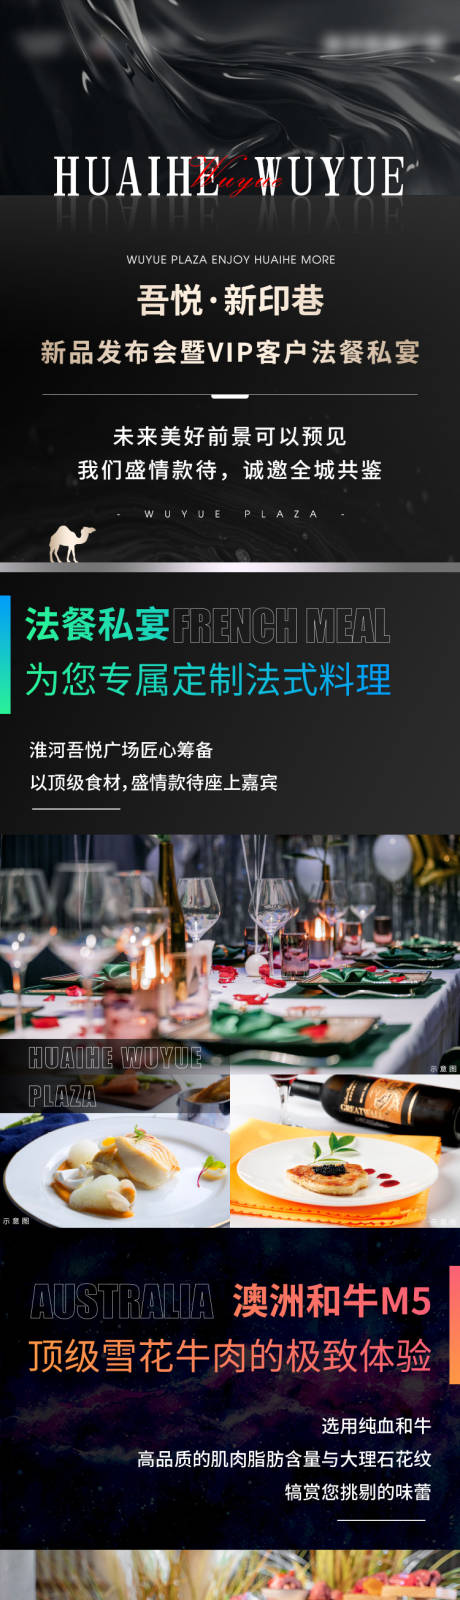 法餐西餐家宴高端暖场活动海报长图